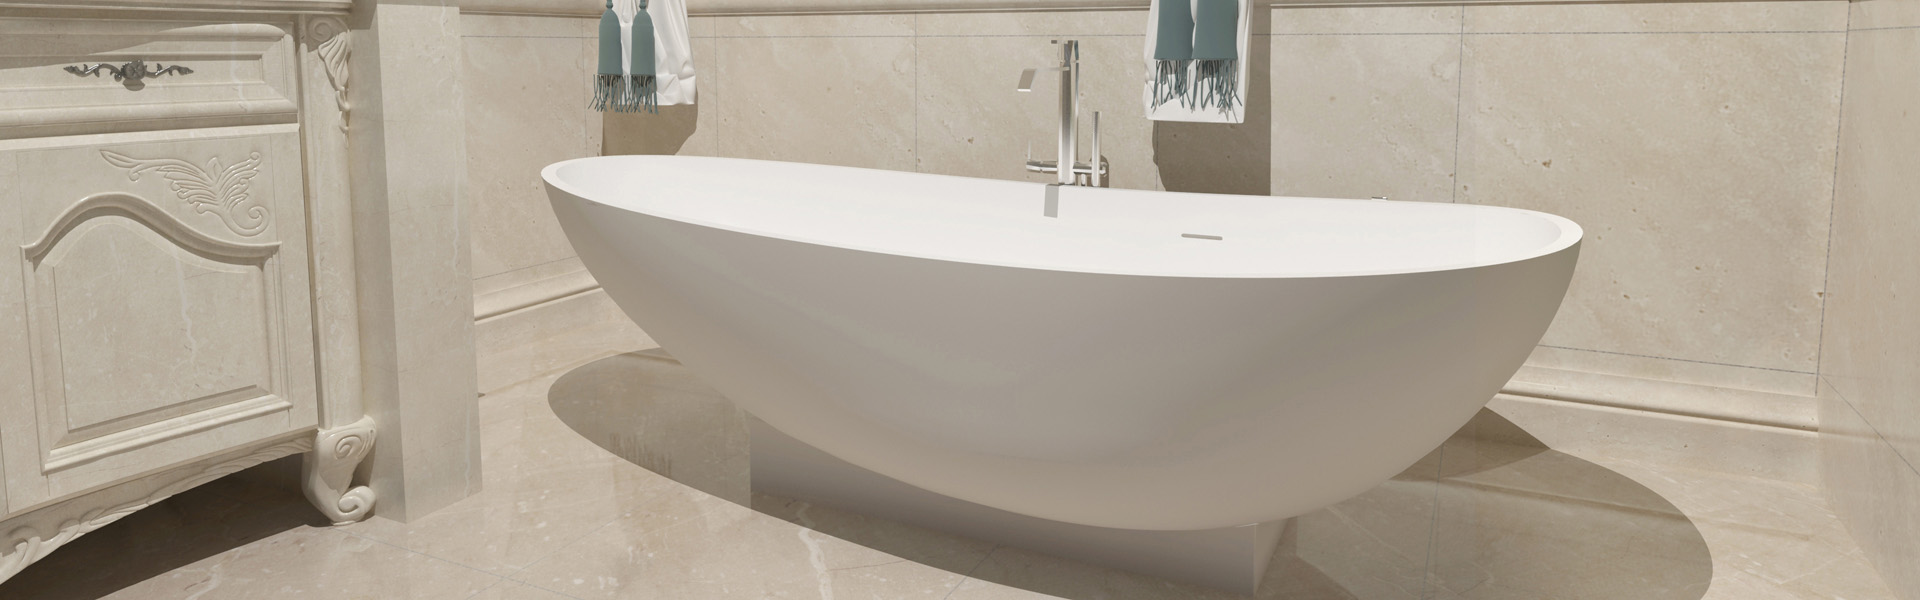 广州汉晶卫生洁具有限公司 人造石浴缸 精铝石浴缸 铝制石浴缸